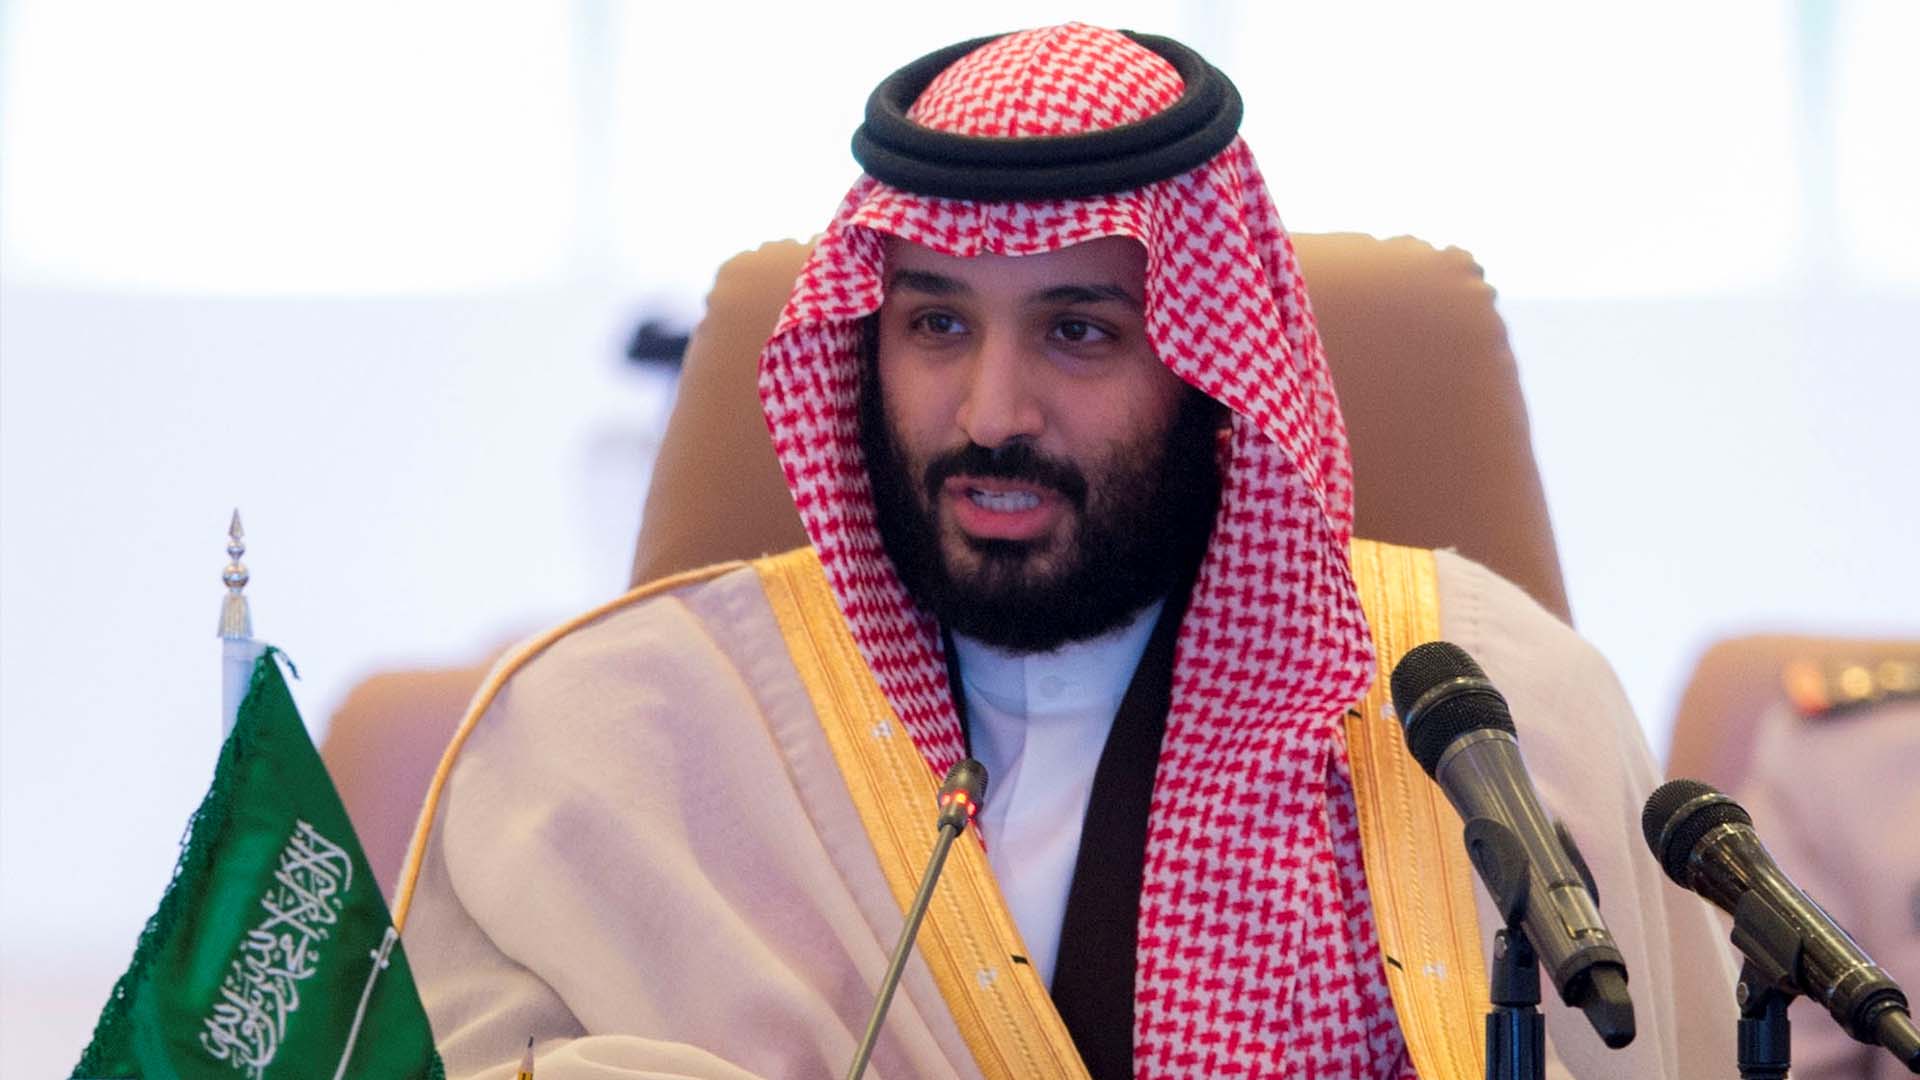 Arabia Saudí continúa su plan aperturista y permitirá las salas de cine en 2018